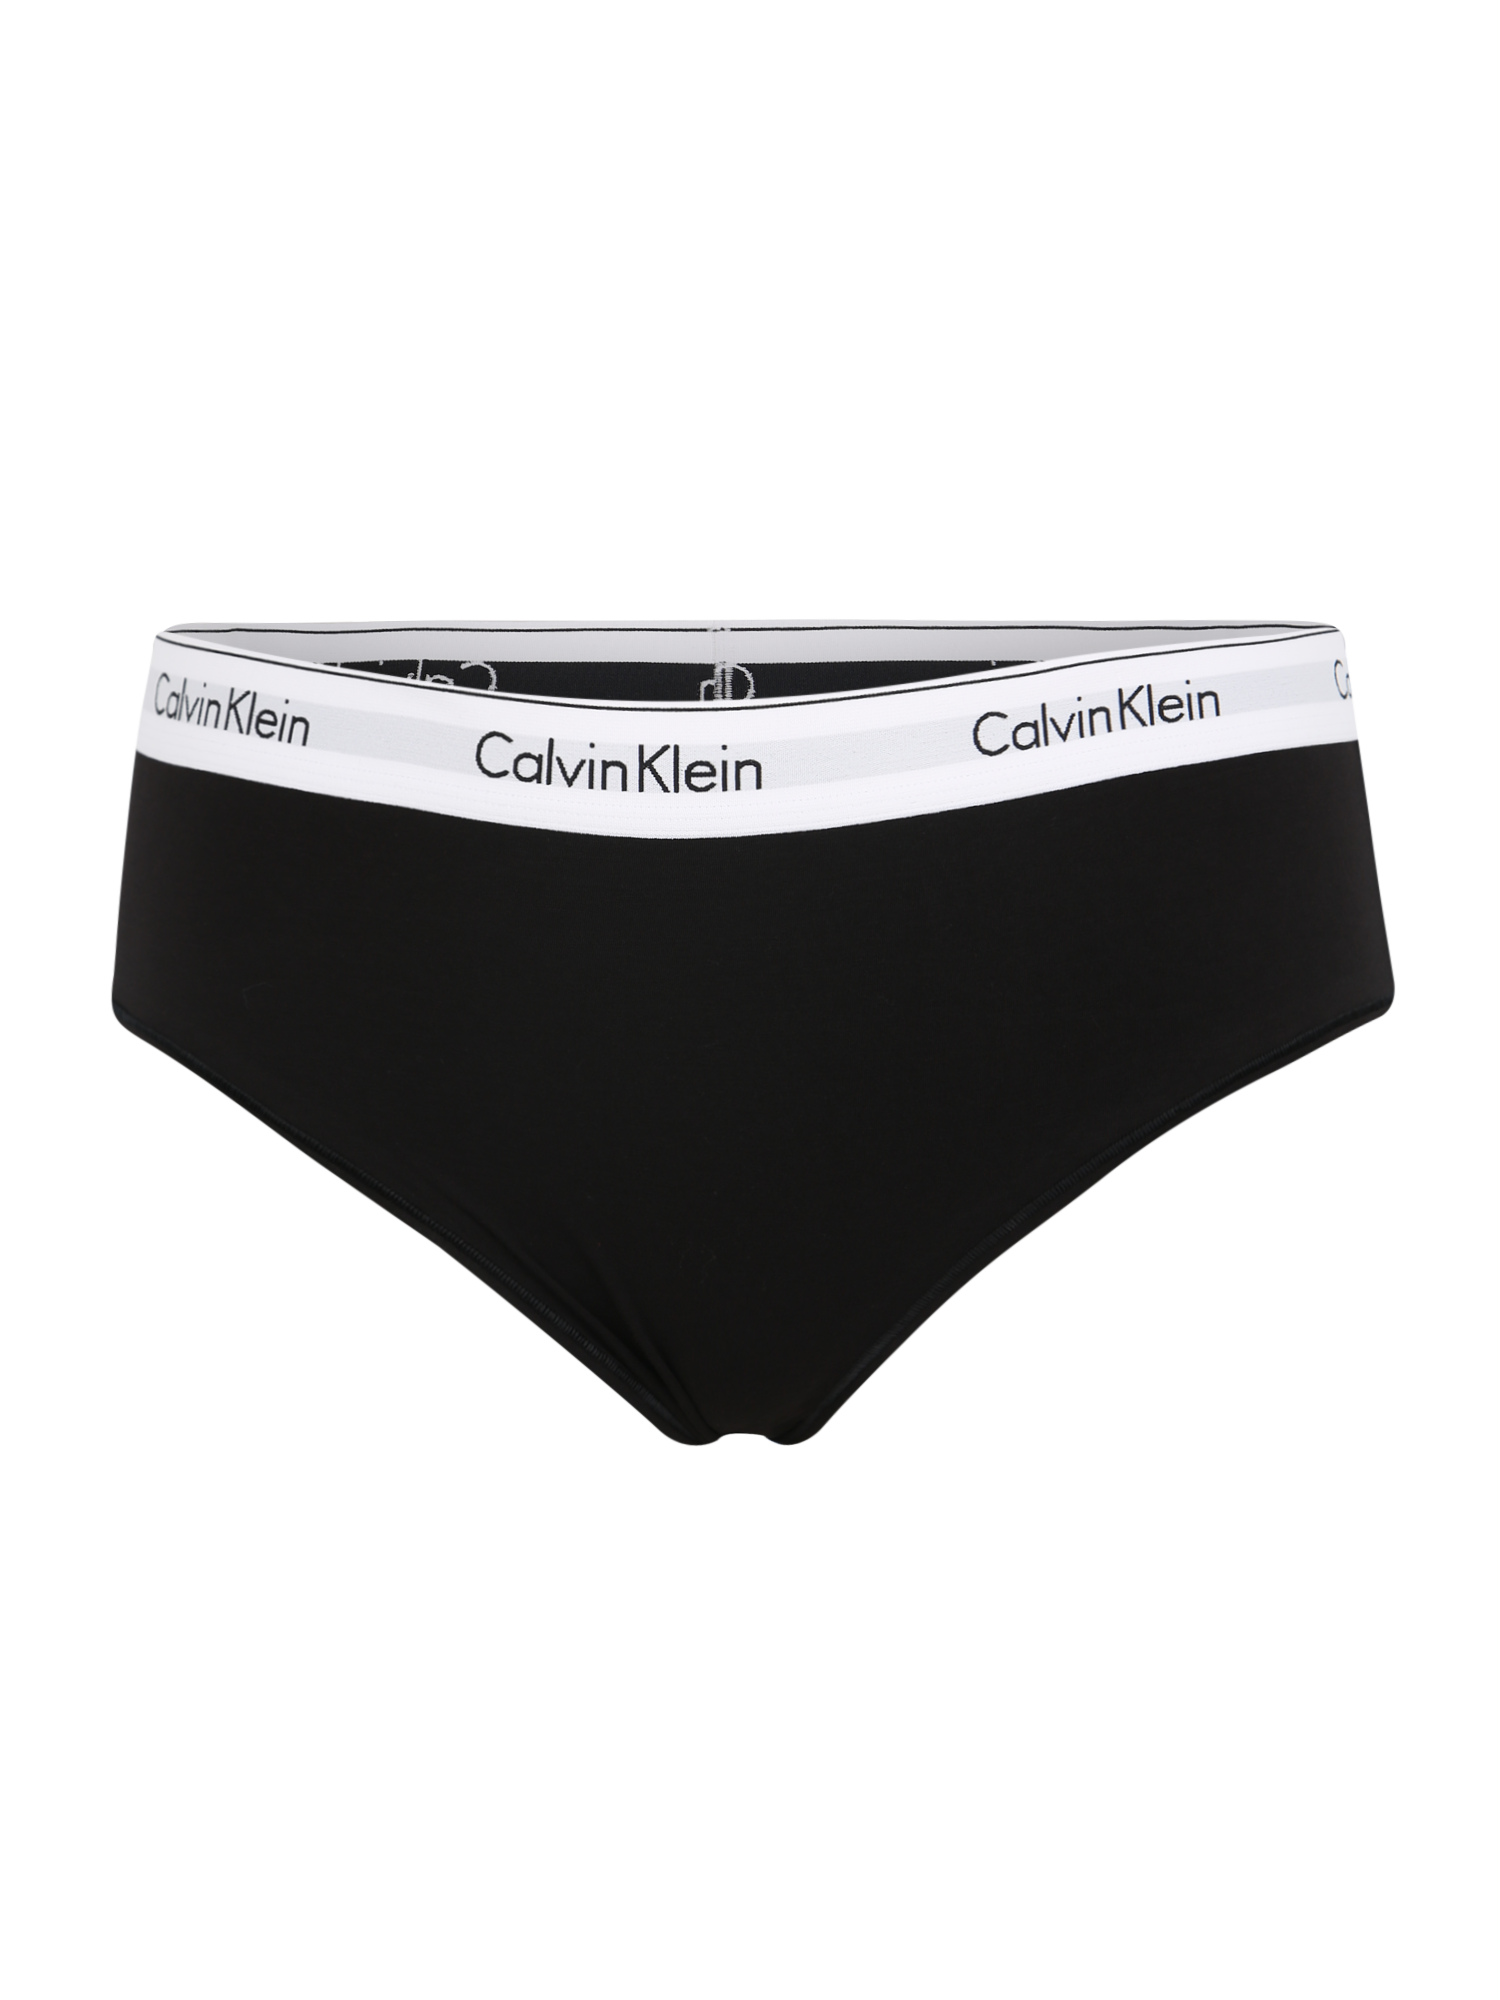 Plus size Odzież Calvin Klein Underwear Slip w kolorze Czarnym 